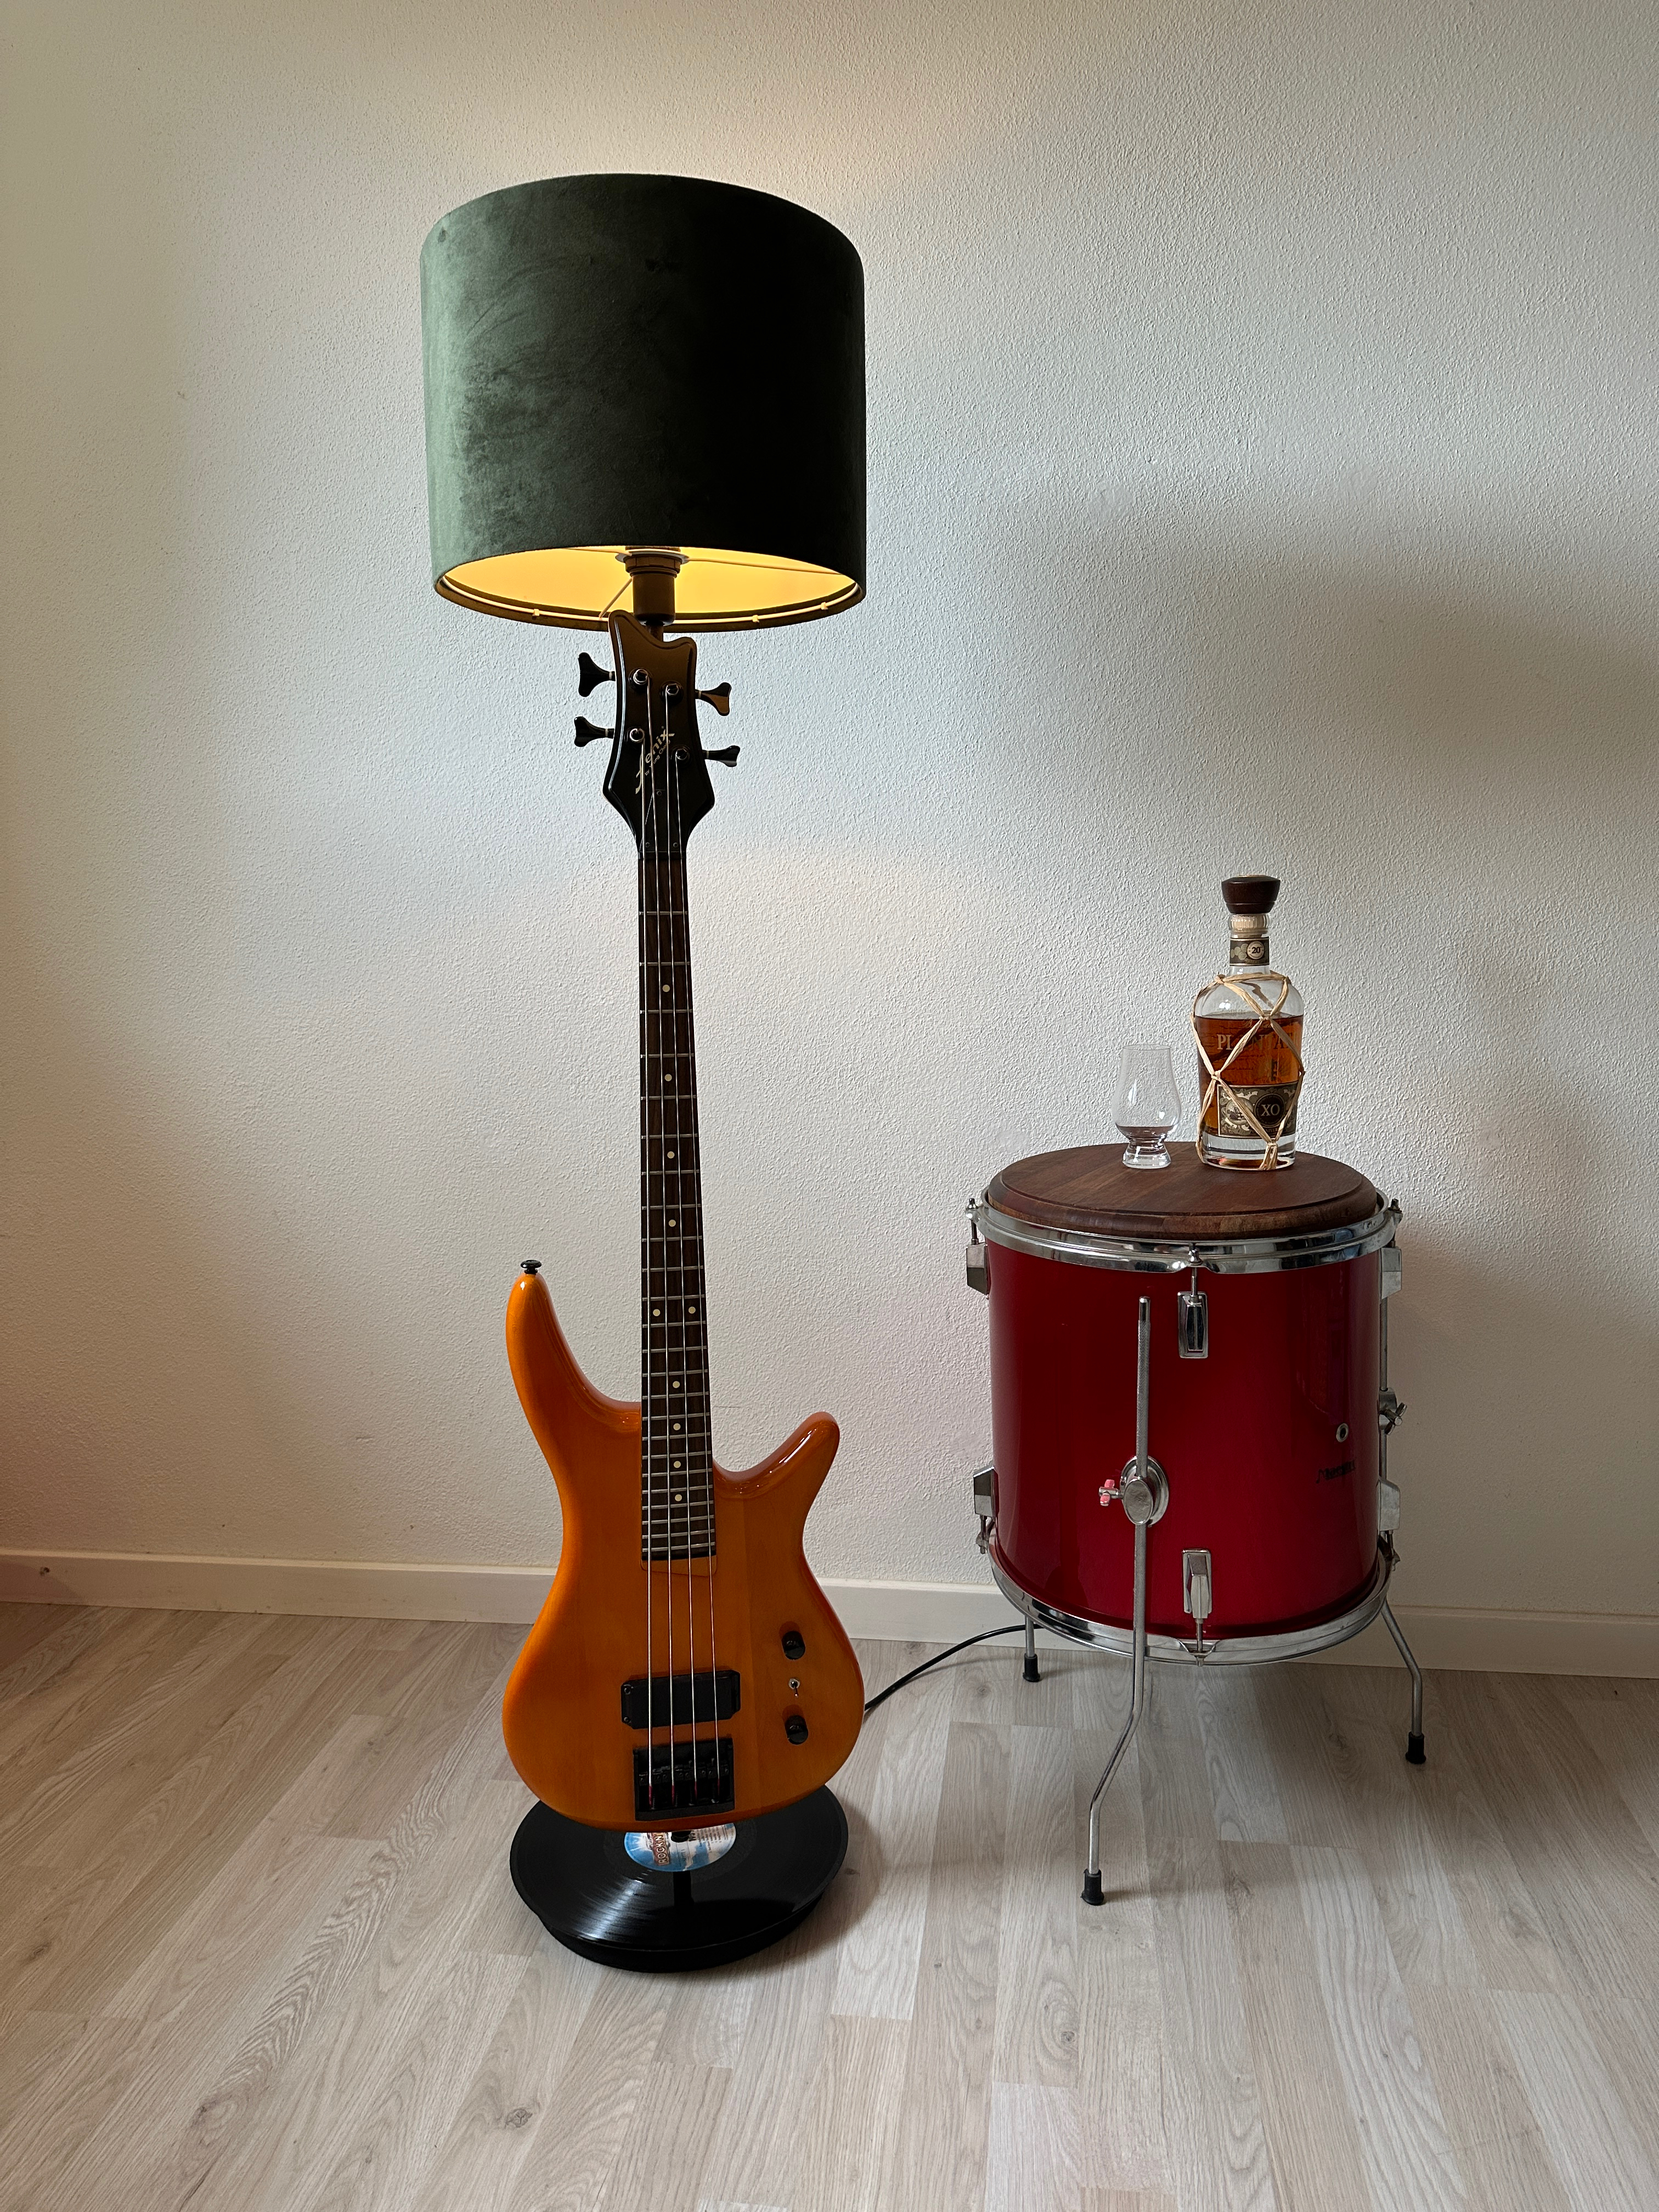 Lampe af guitar___serialized1